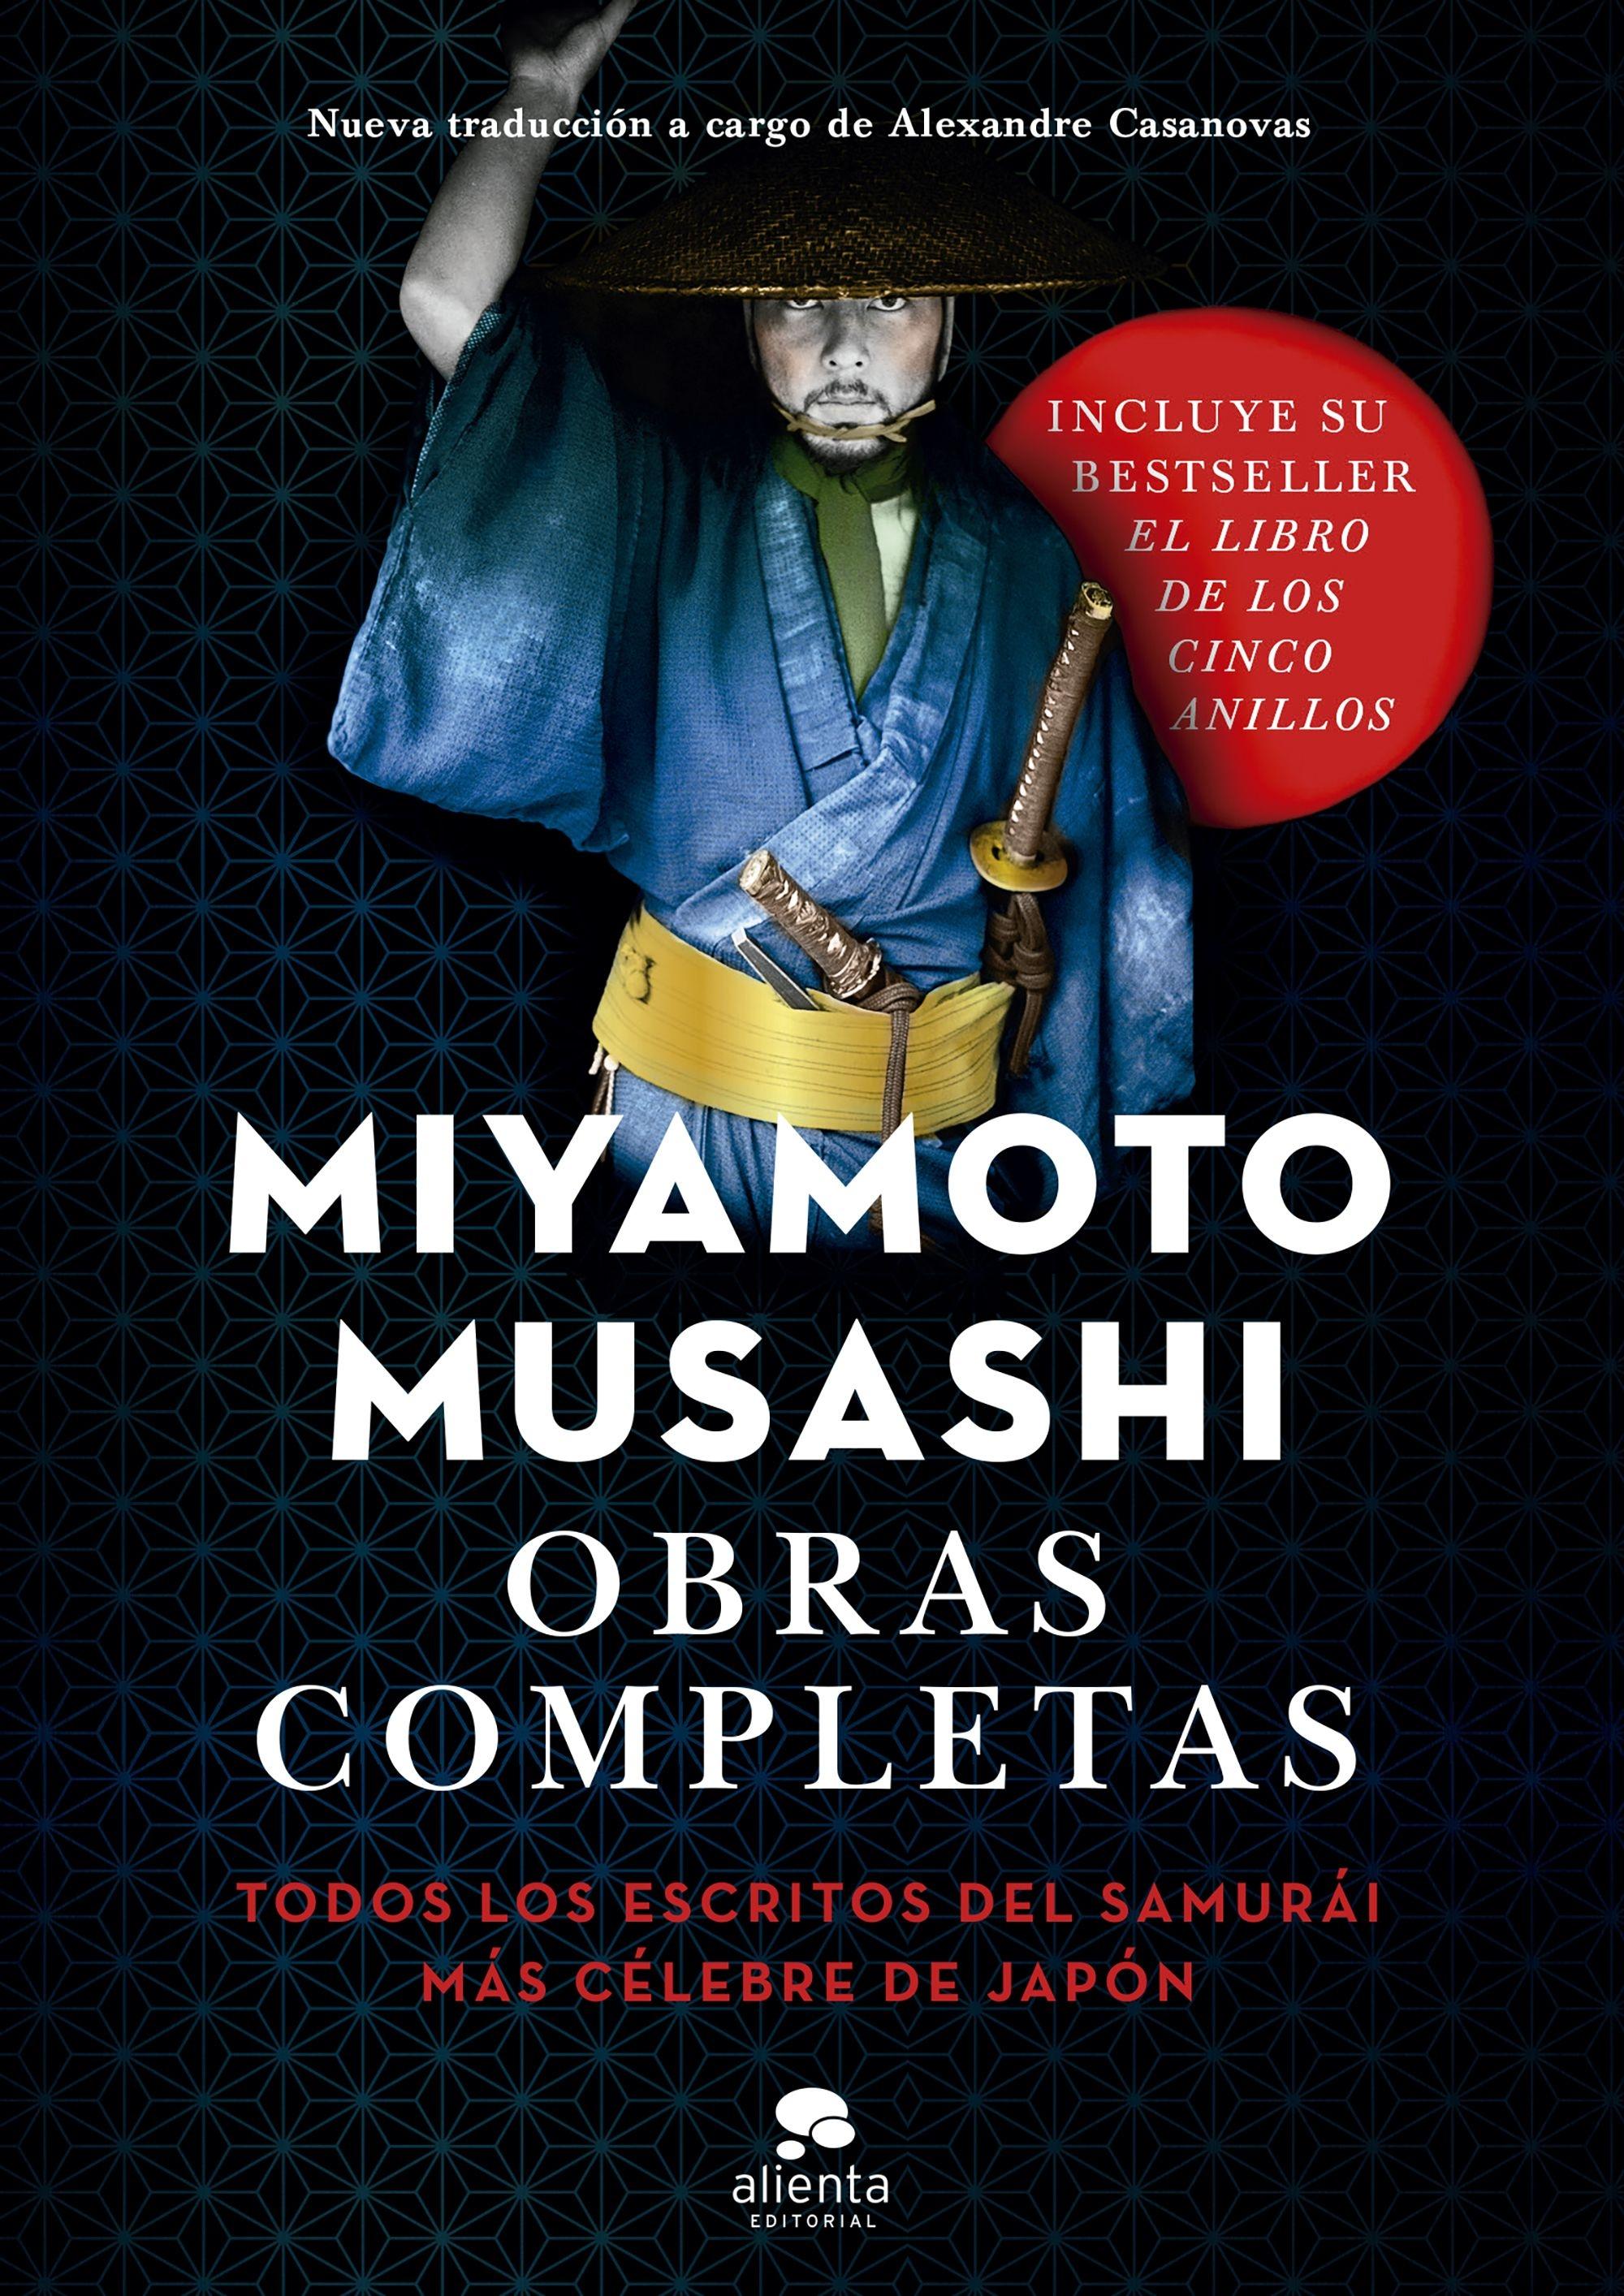 Obras completas "Todos los escritos del samurái más célebre de Japón"